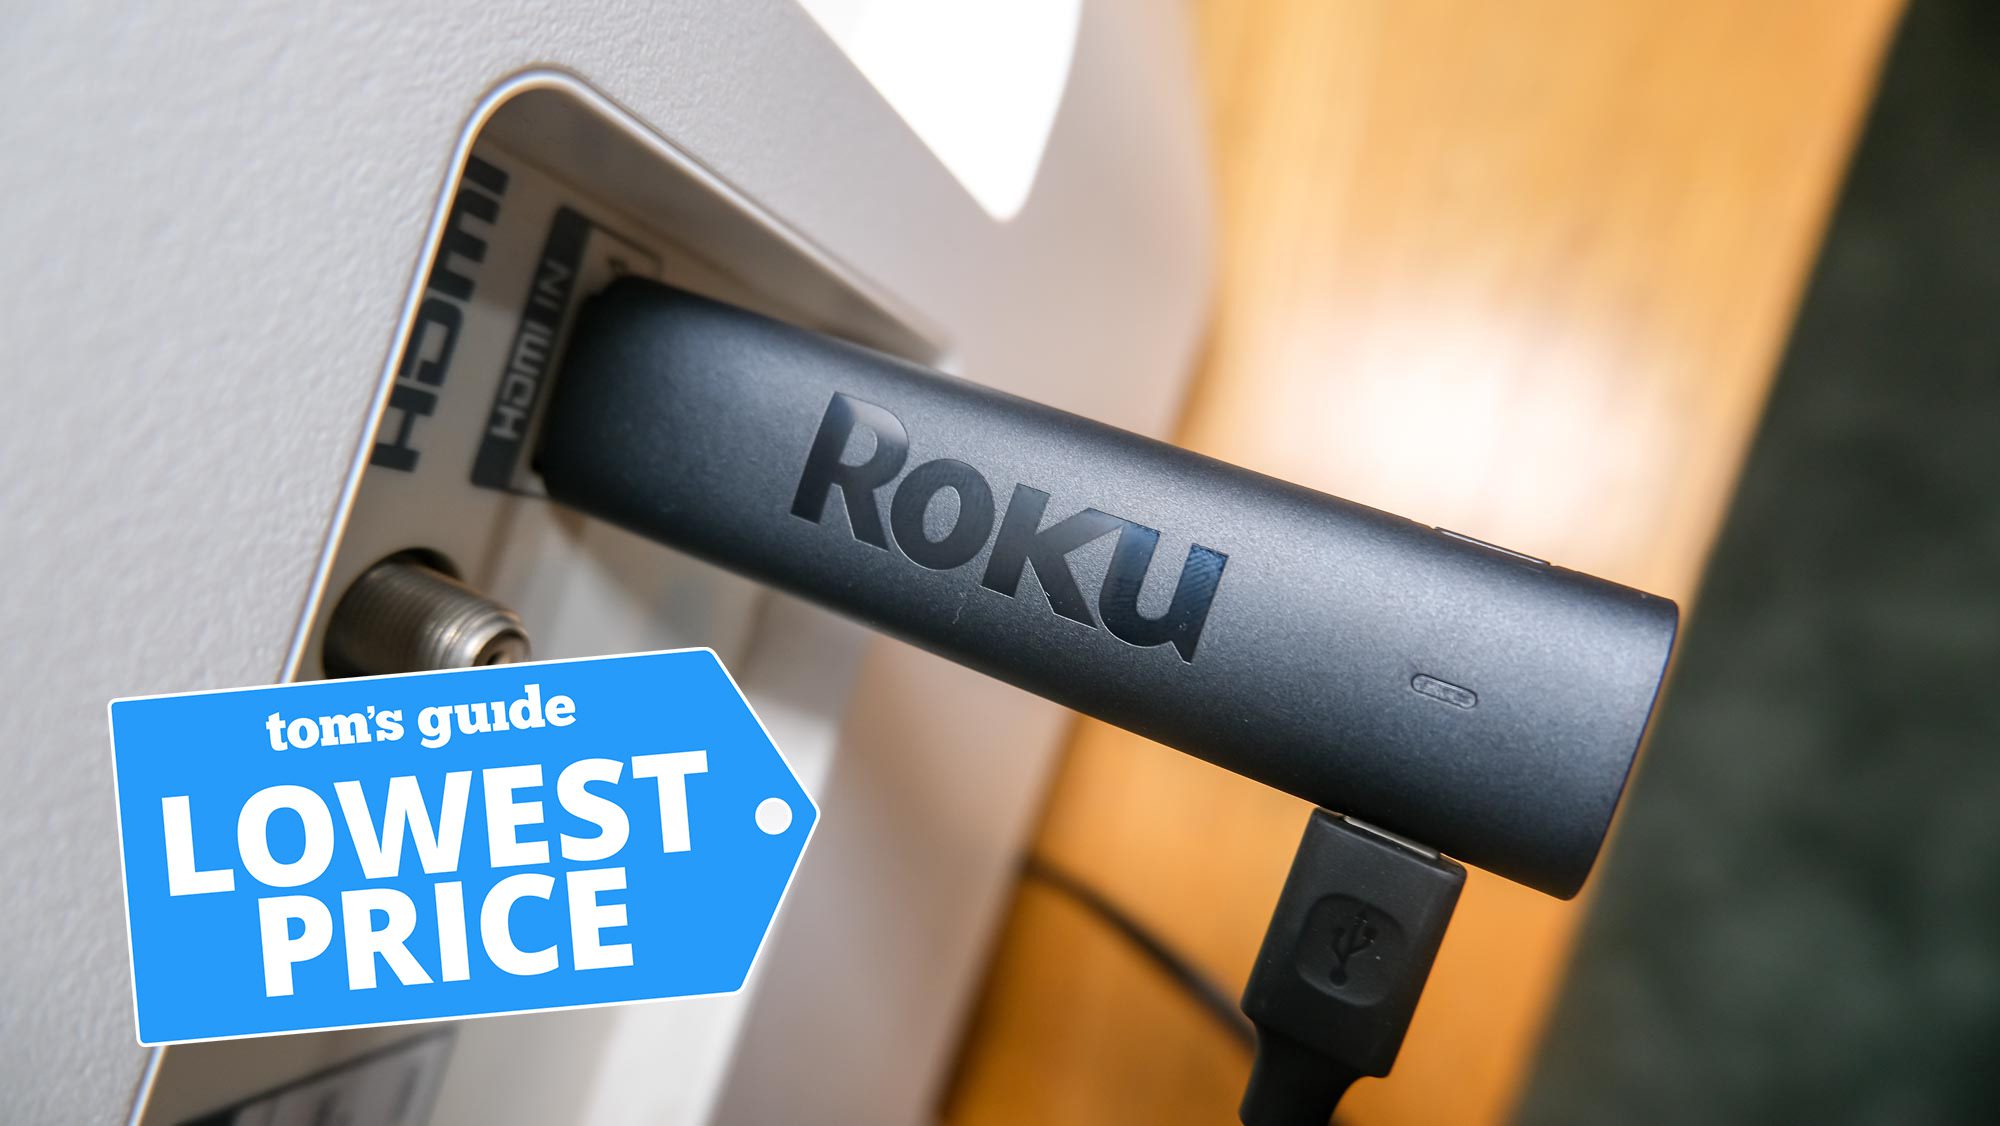 Roku Streaming Stick 4K dicolokkan ke port HDMI dengan grafik Harga Terendah Tom's Guide di atasnya